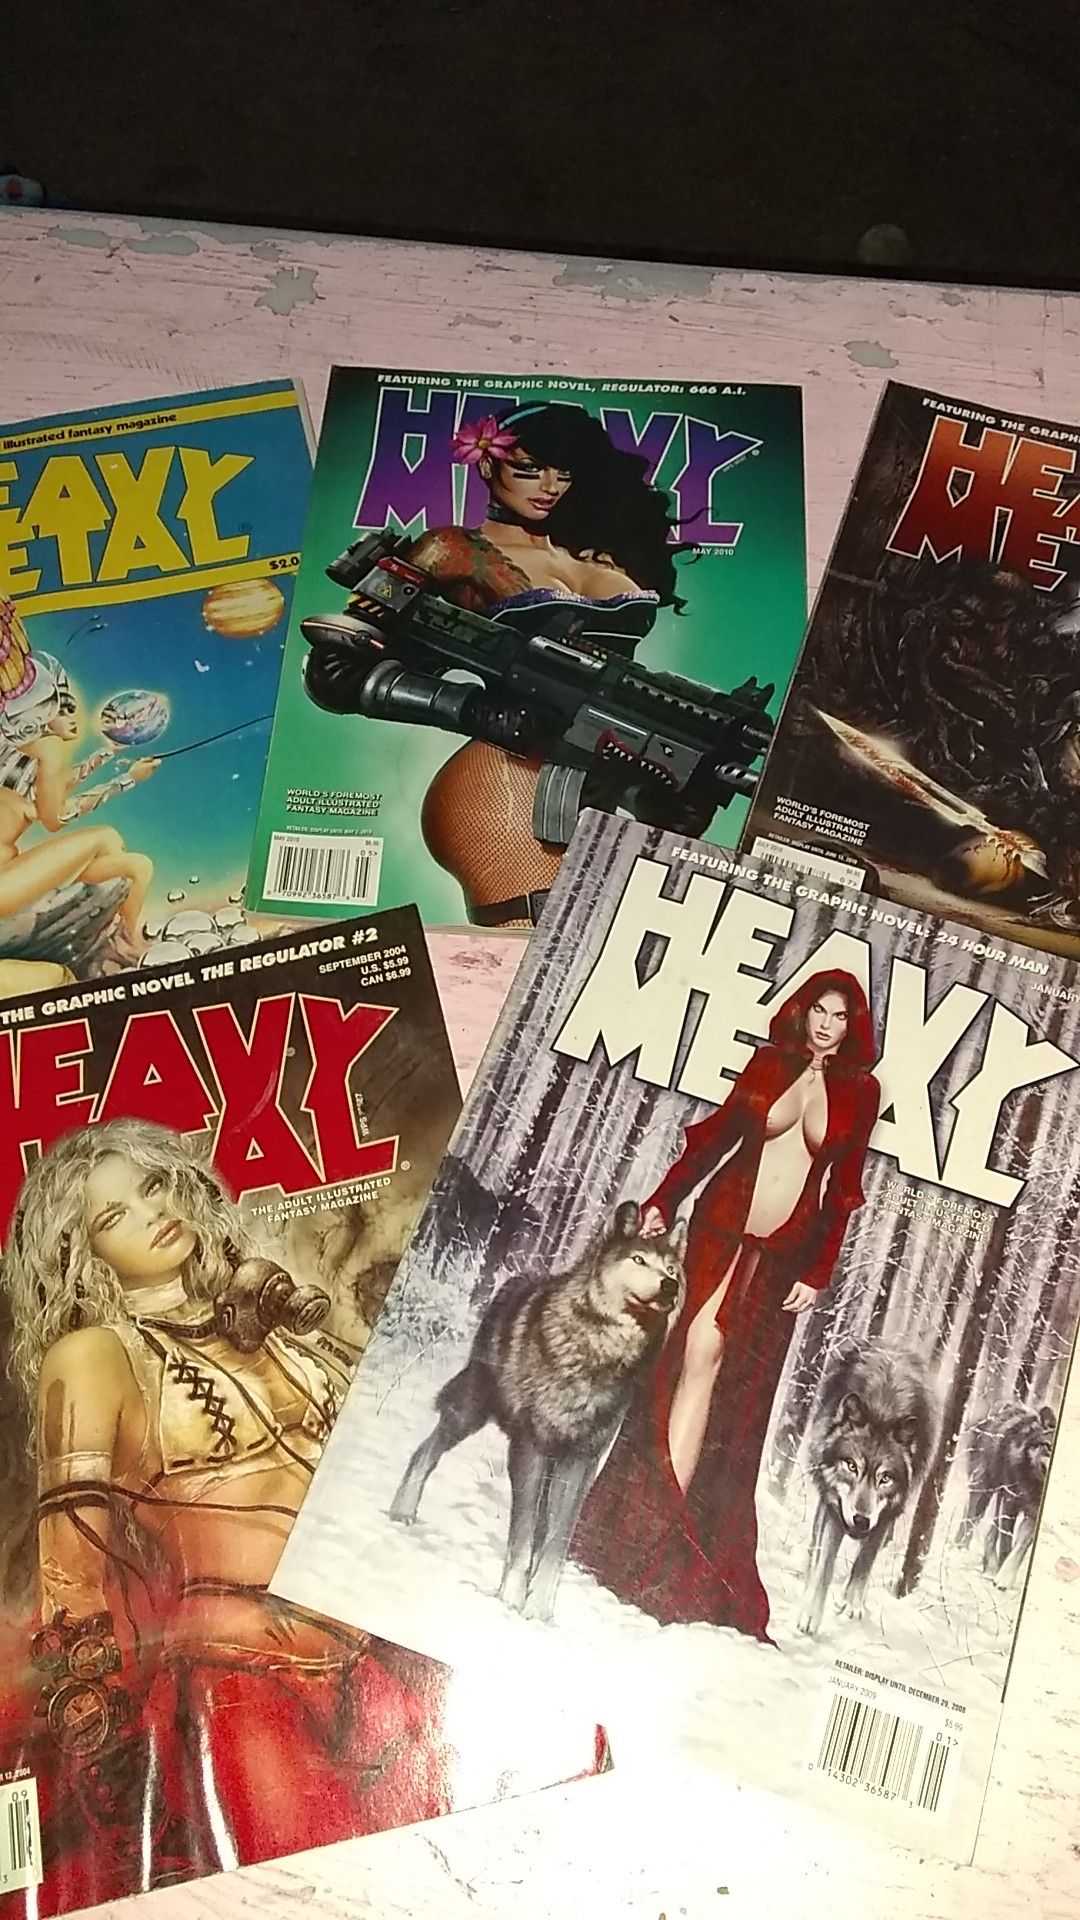 Heavy metal magazines